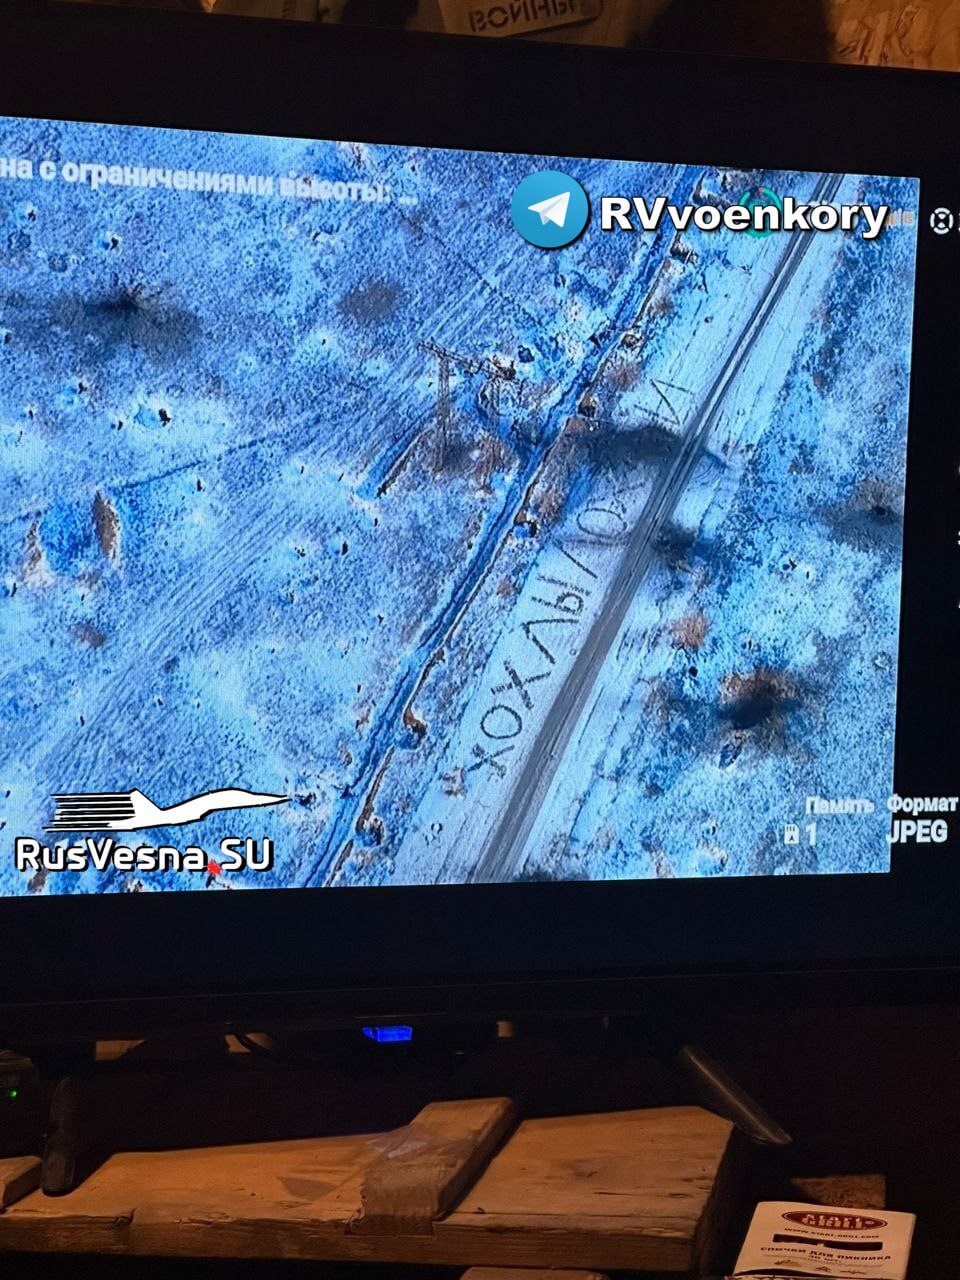 РВ: Российские бойцы «передали привет» ВСУшникам гигантской надписью